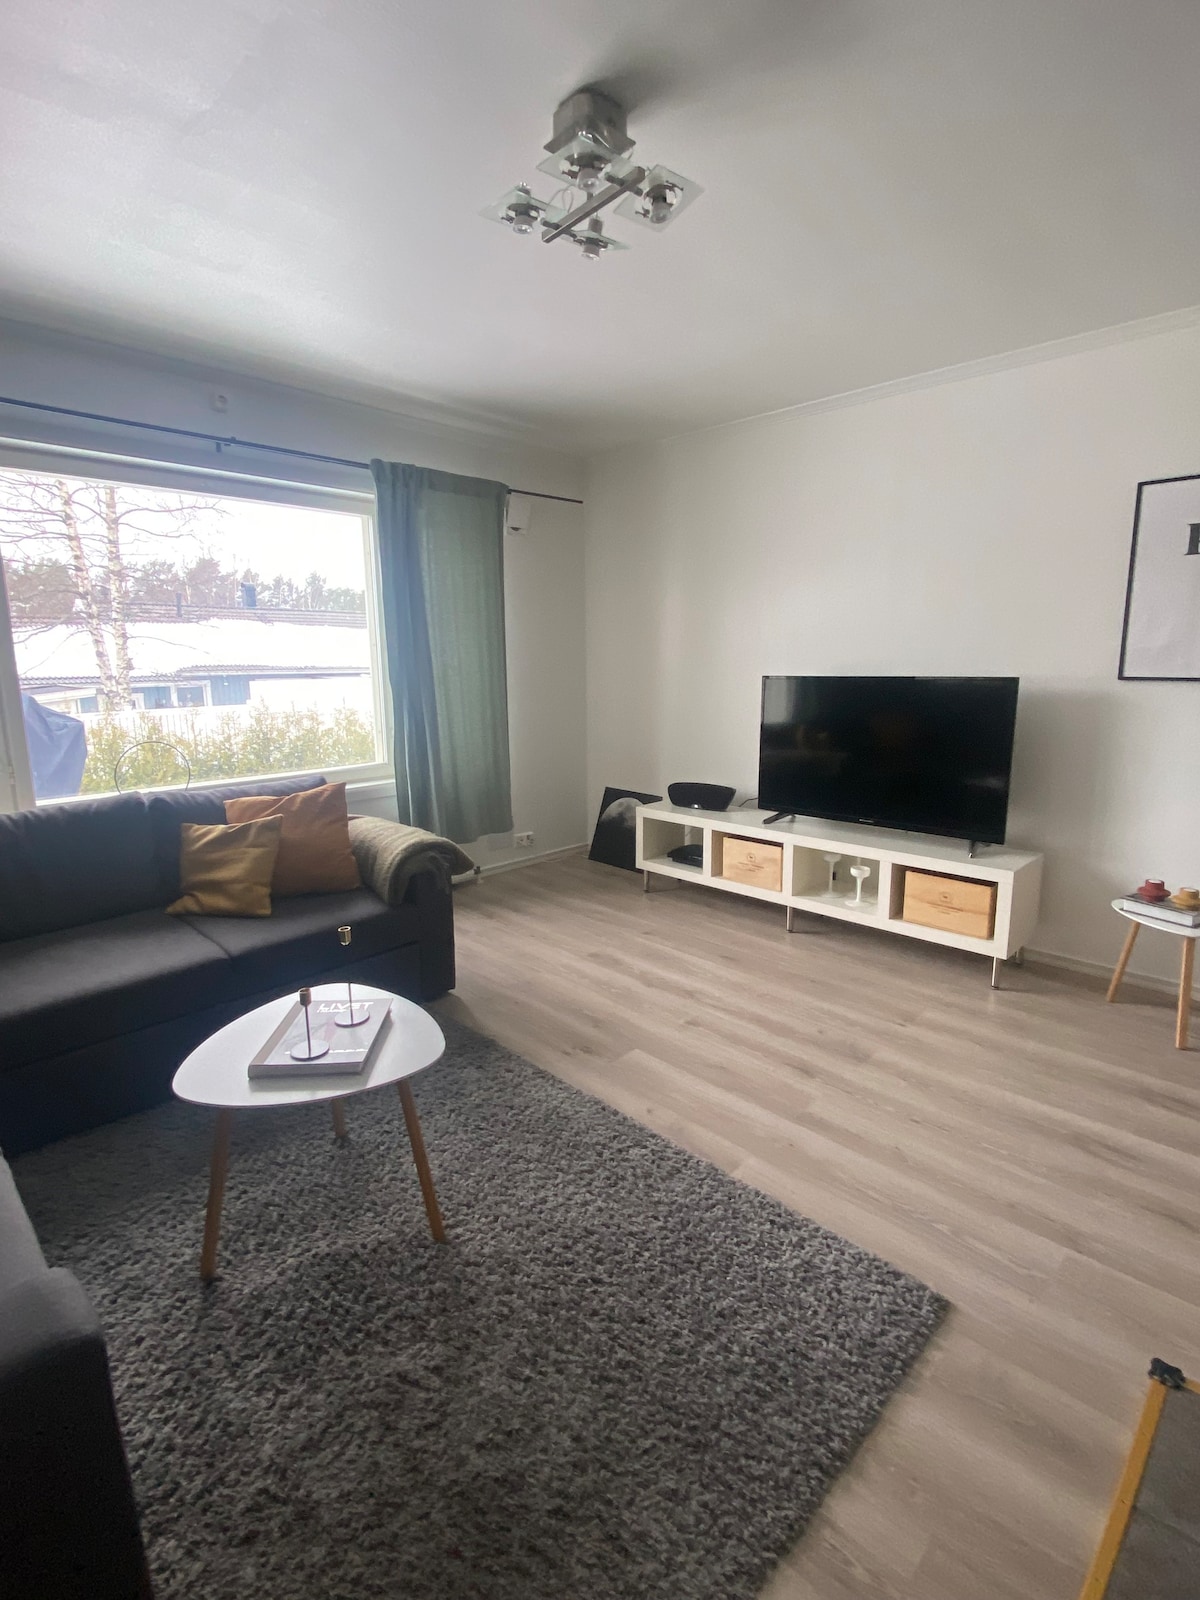 Modern lägenhet med villakänsla i södra Mariehamn!